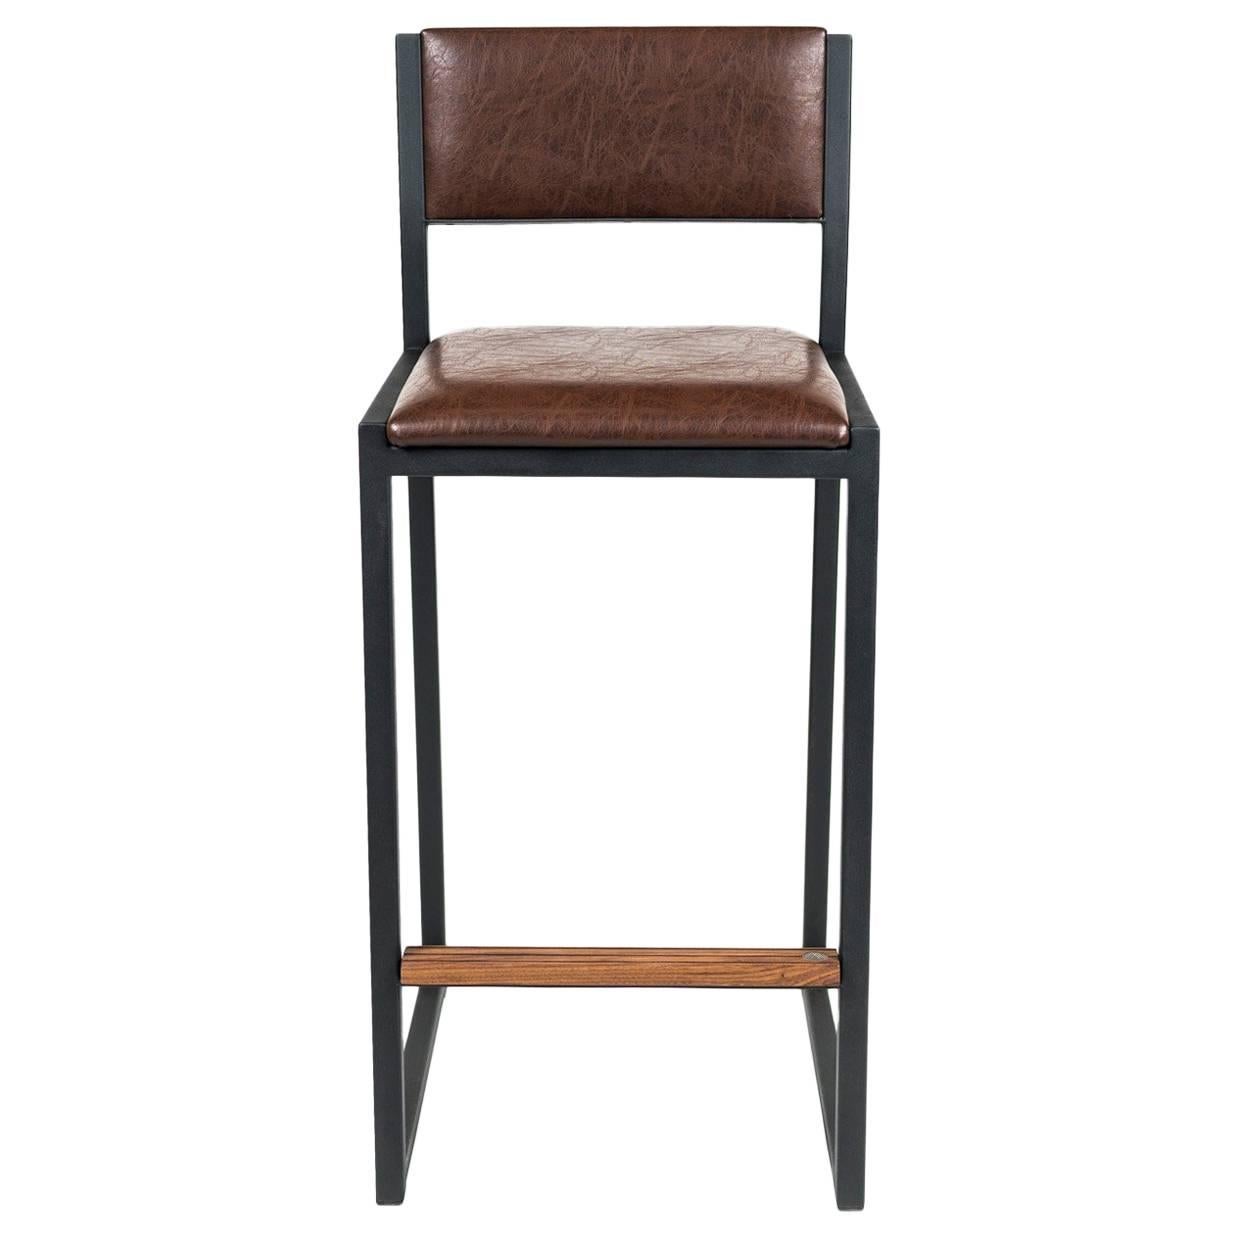 Shaker-Tischhocker-Stuhl von Ambrozia, Nussbaum, schwarzer Stahl, gealtertes braunes Vinyl